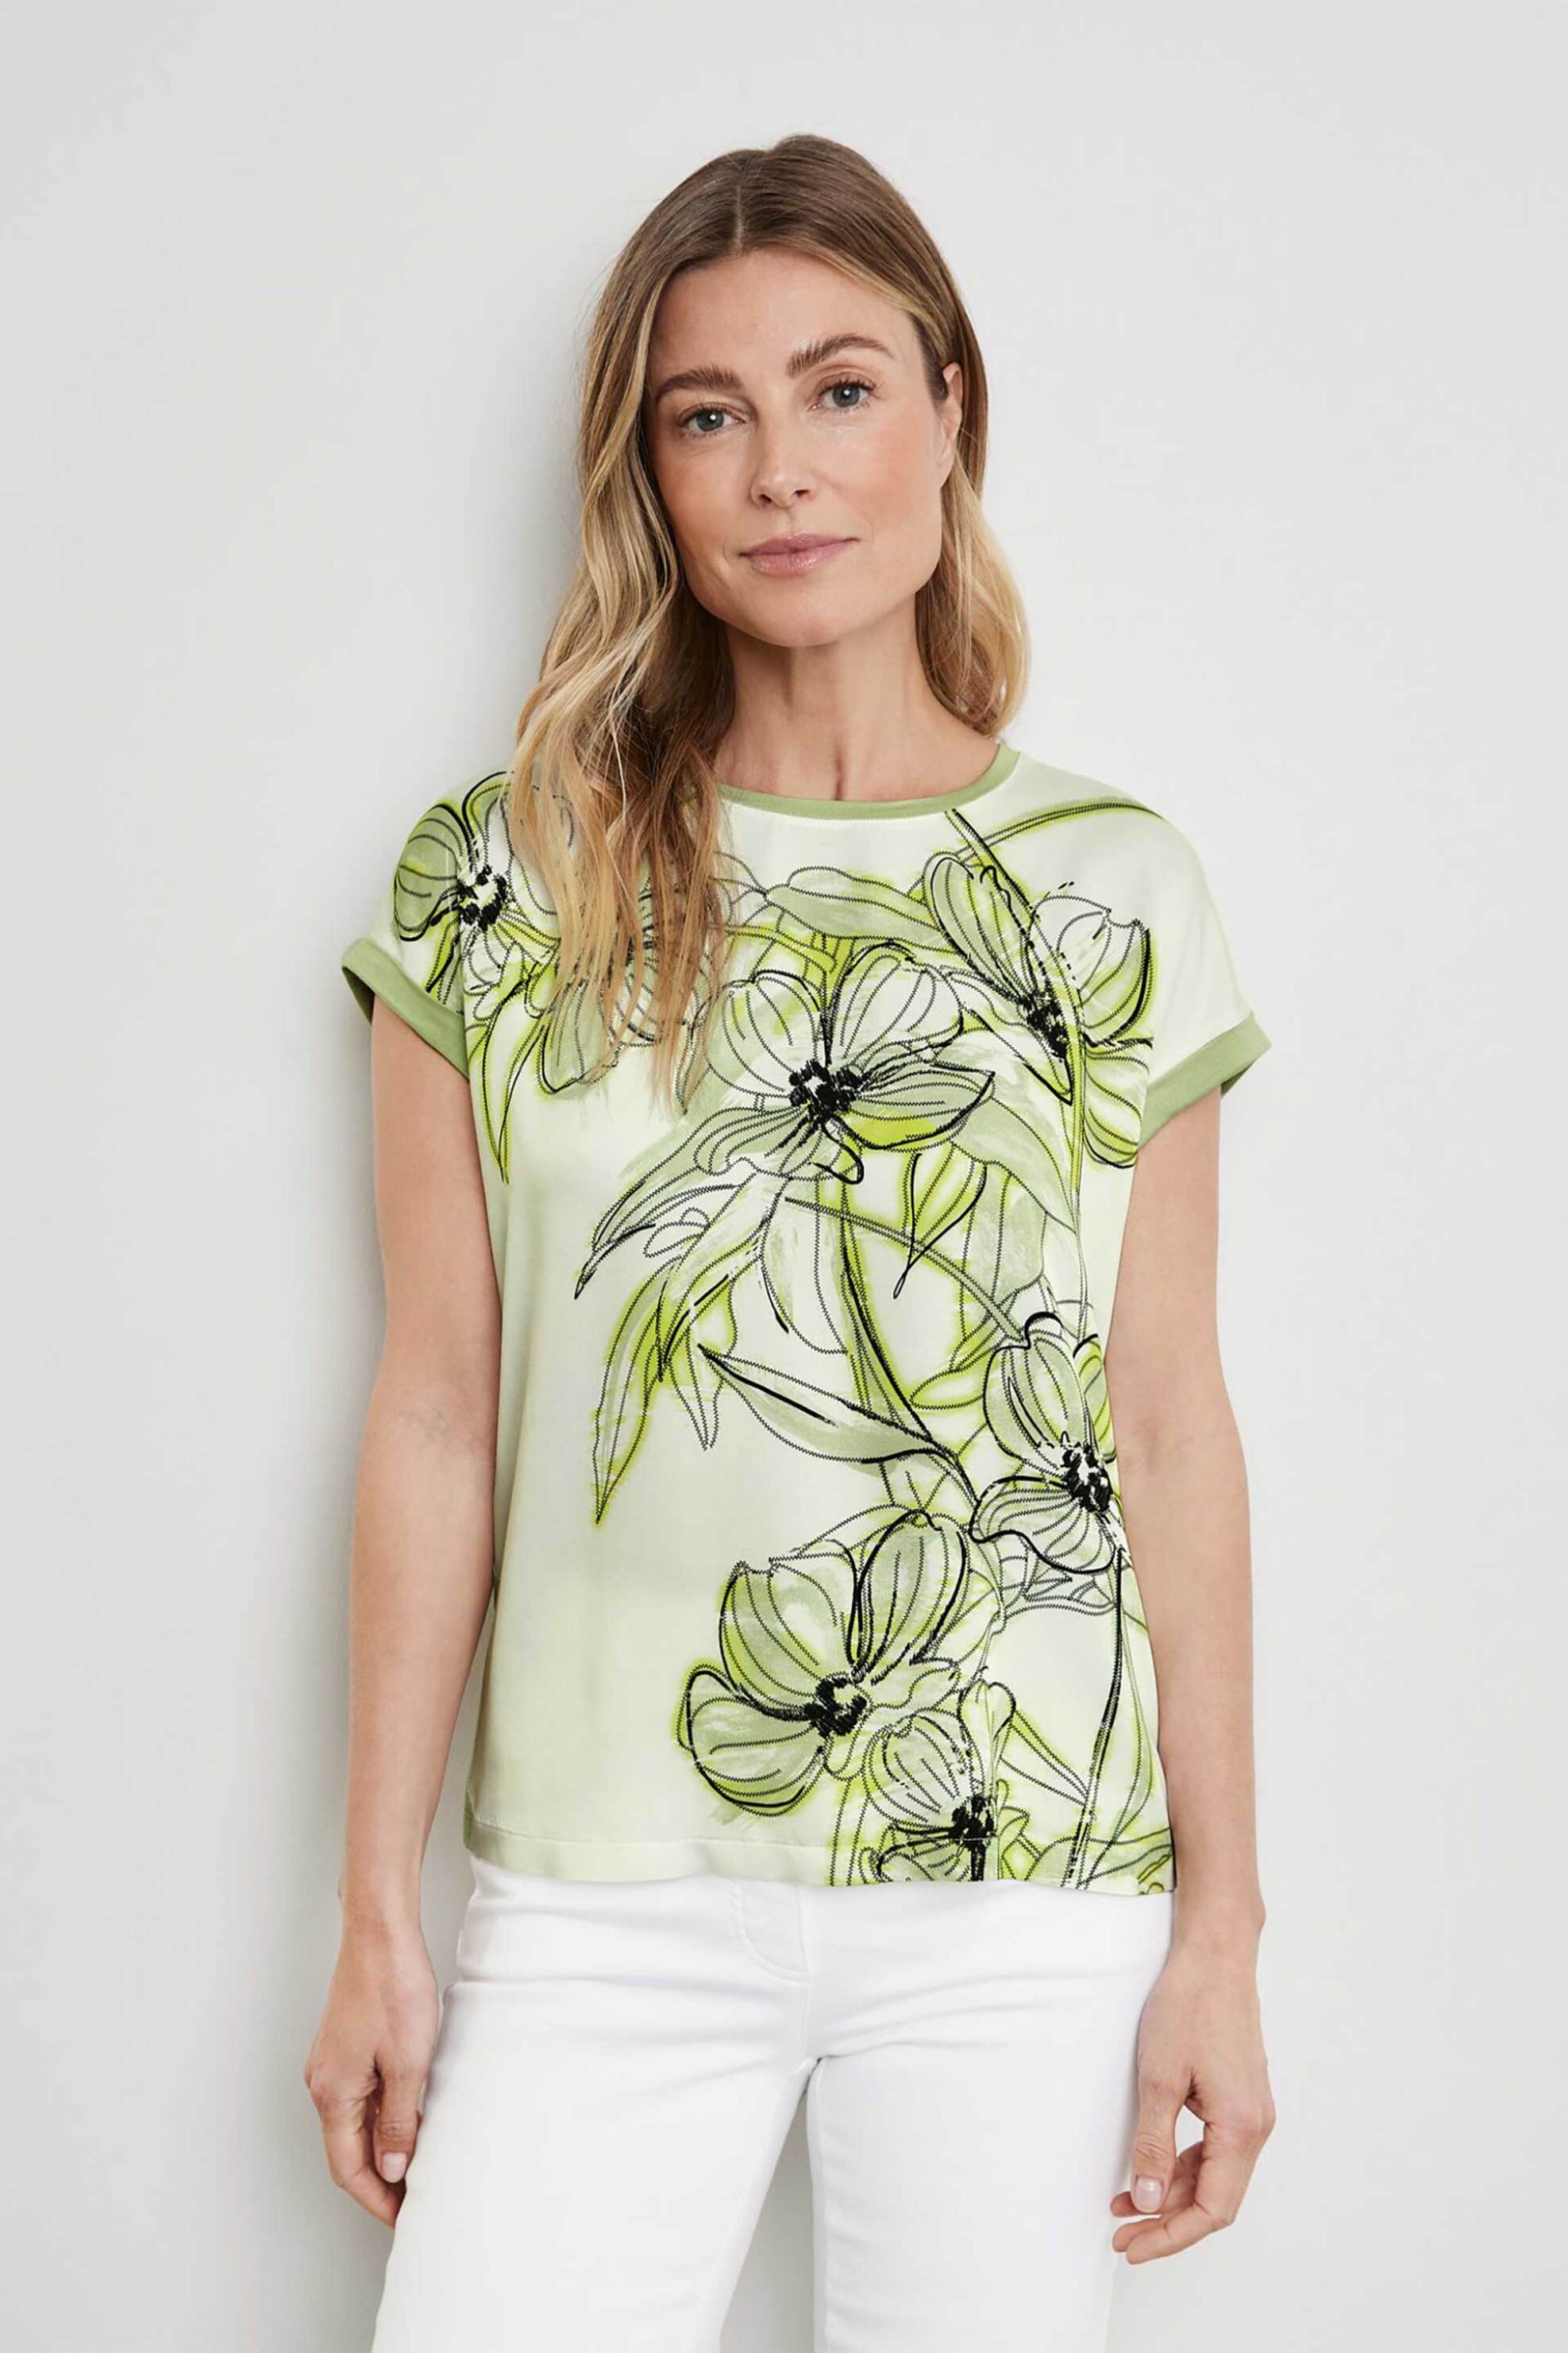 Γυναικεία Ρούχα & Αξεσουάρ > Γυναικεία Ρούχα > Γυναικεία Τοπ > Γυναικεία T-Shirts Gerry Weber γυναικείο T-shirt με floral print Casual Fit - 270039-44043 Λαδί